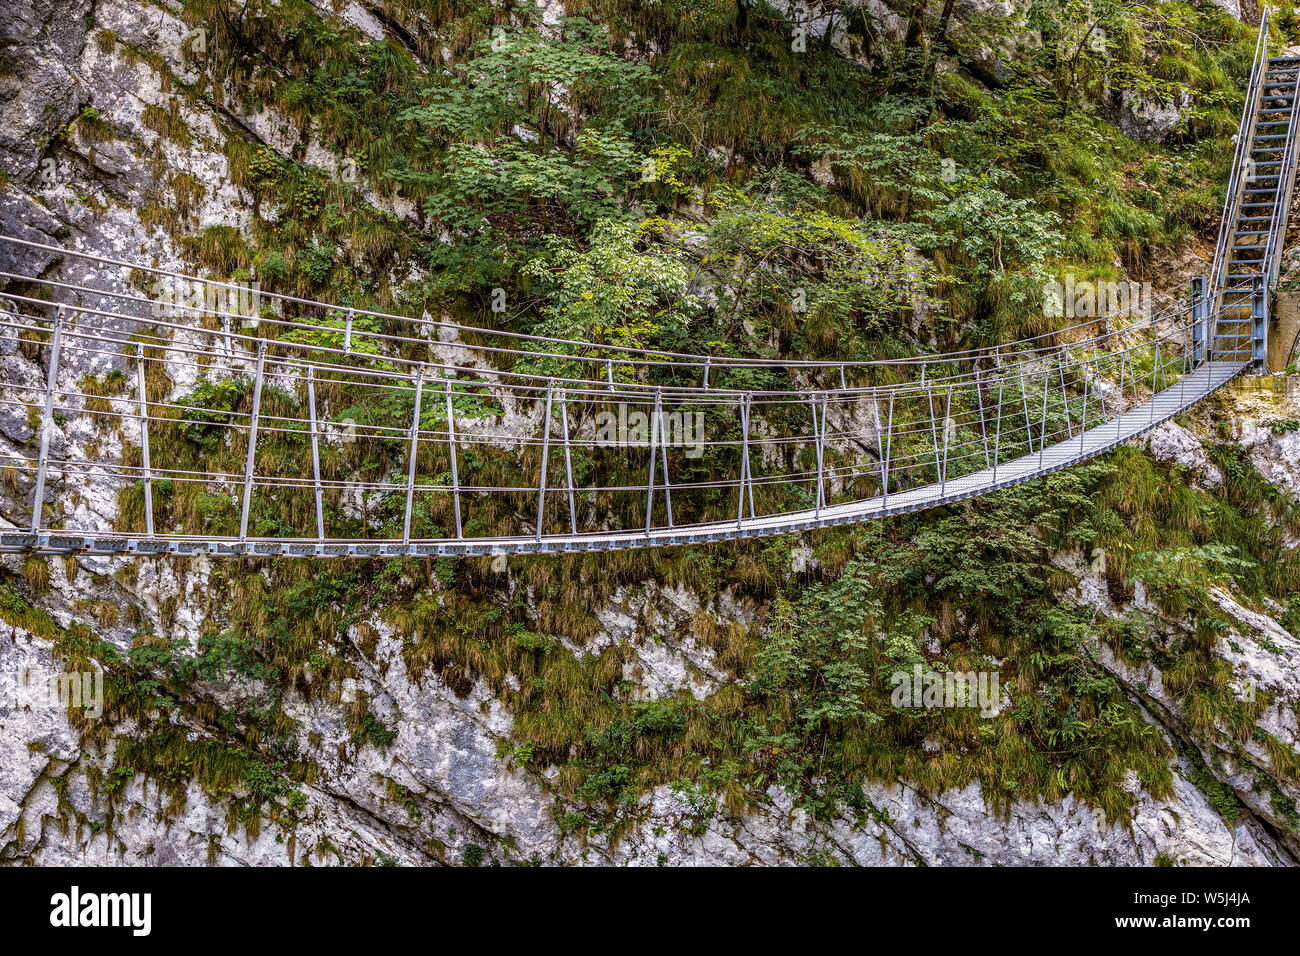 Italia Friuli Barcis vecchia strada della Val Cellina - Himalayan Bridge - Parco Naturale delle Dolomiti Friulane Foto Stock